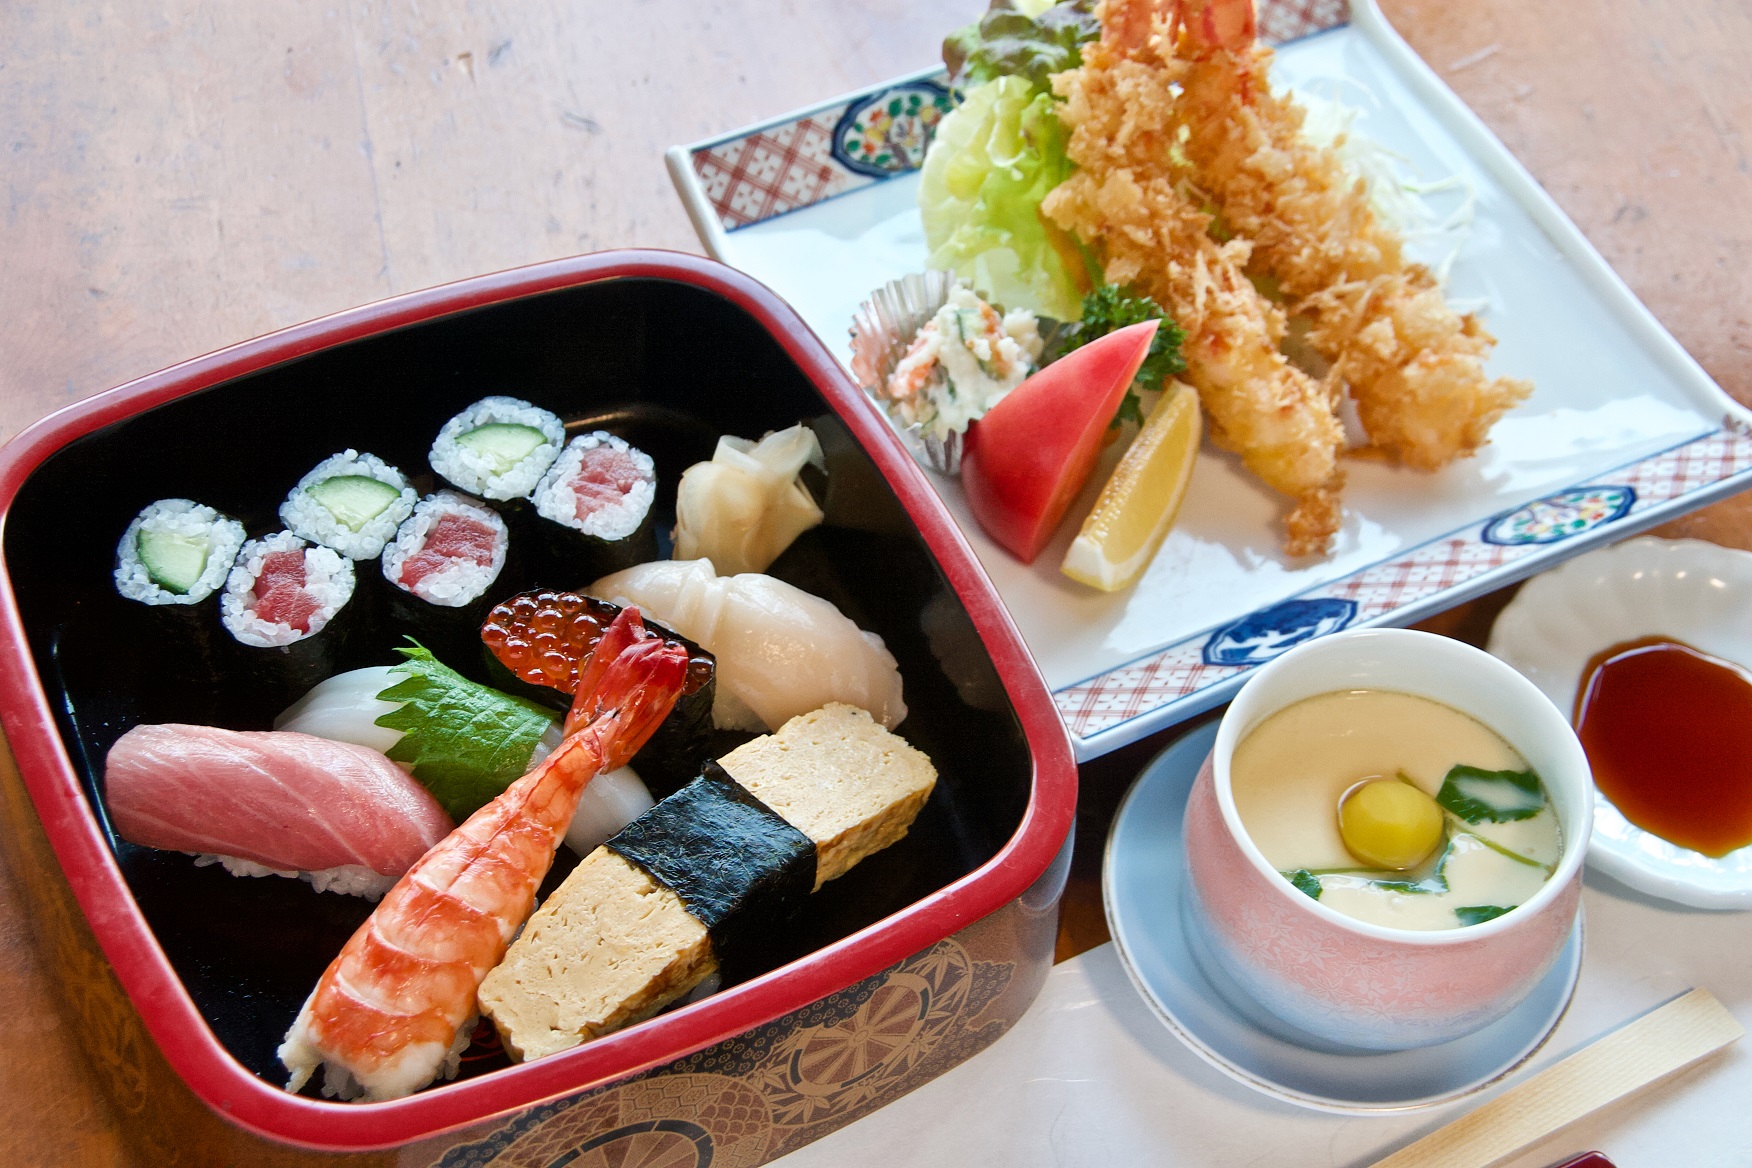 『にぎり上寿司』（1650円）など寿司各種の他、『エビフライ』（1040円）や『茶碗蒸し』（550円）なども味わえる